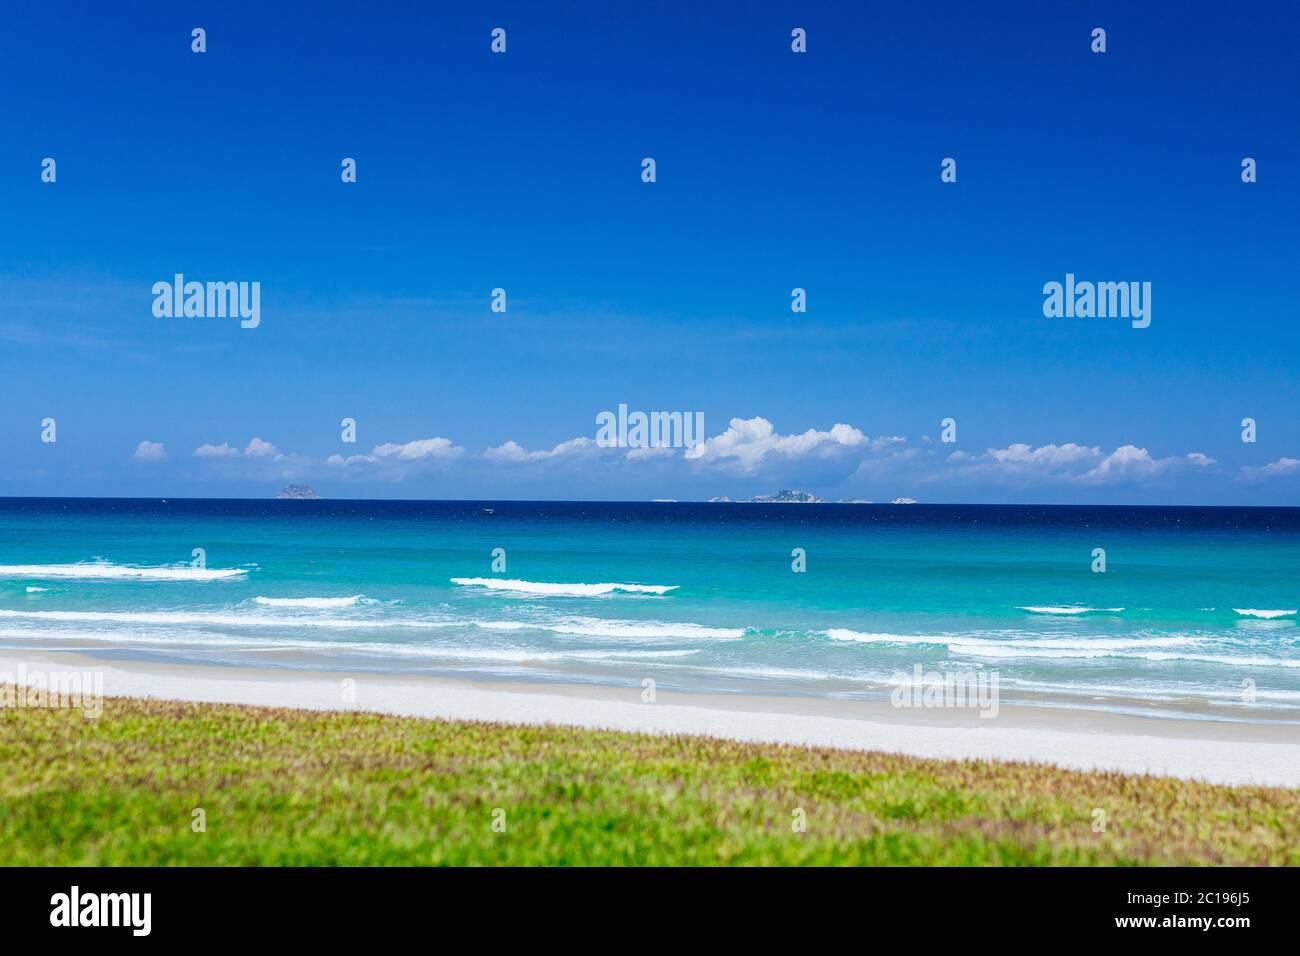 Exotischer Strand für eine schöne Kulisse oder Bildschirmschoner, mit azurblauem Wasser im Meer und klaren blauen Himmel mit weißen Wolken. Konzept der Reise, Sommer vaca Stockfoto